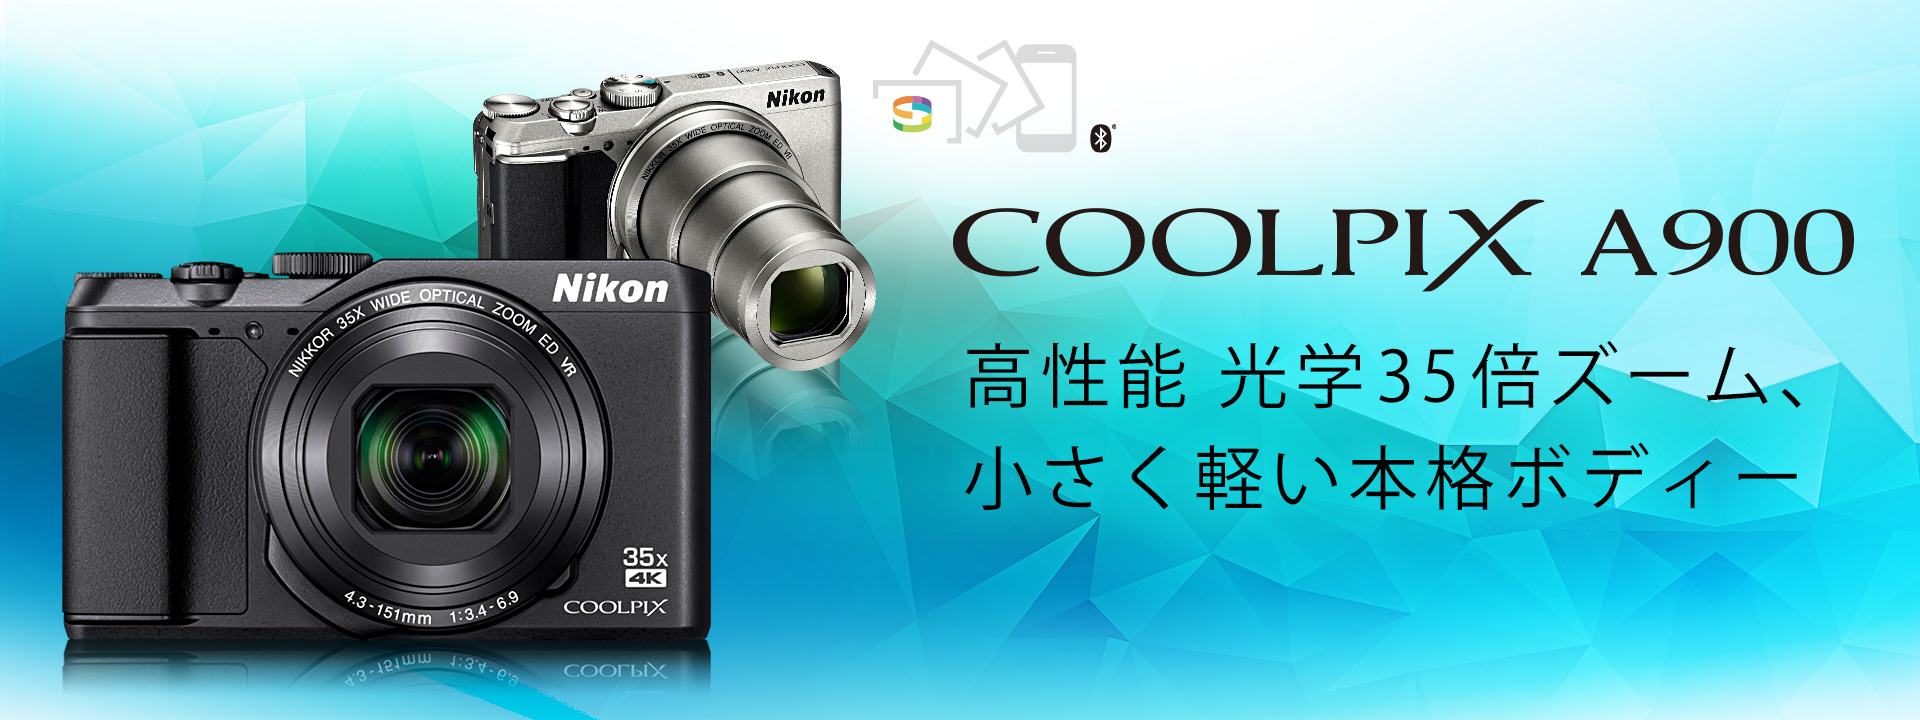 COOLPIX A900 - 概要 | コンパクトデジタルカメラ | ニコンイメージング